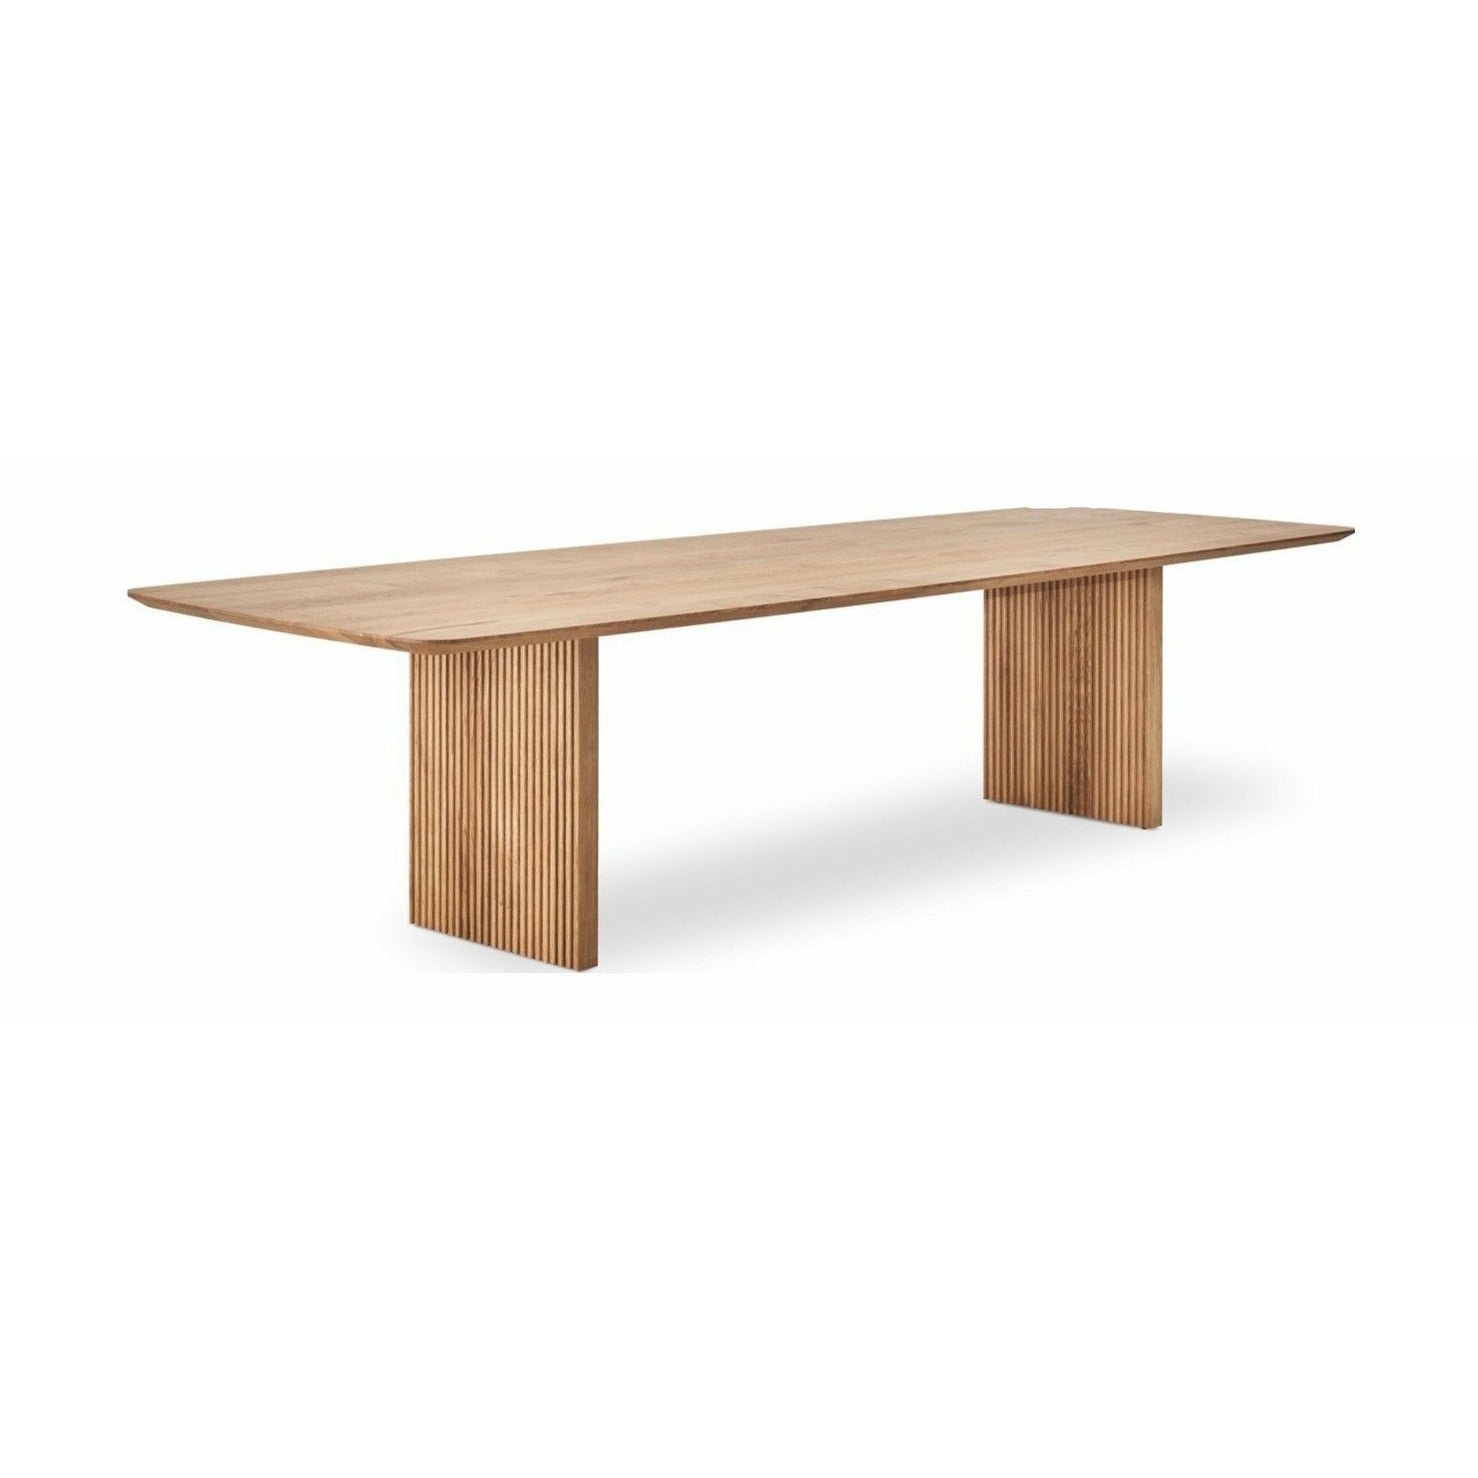 Dk3 Tio matbord vilda ekoljor, 300x105 cm